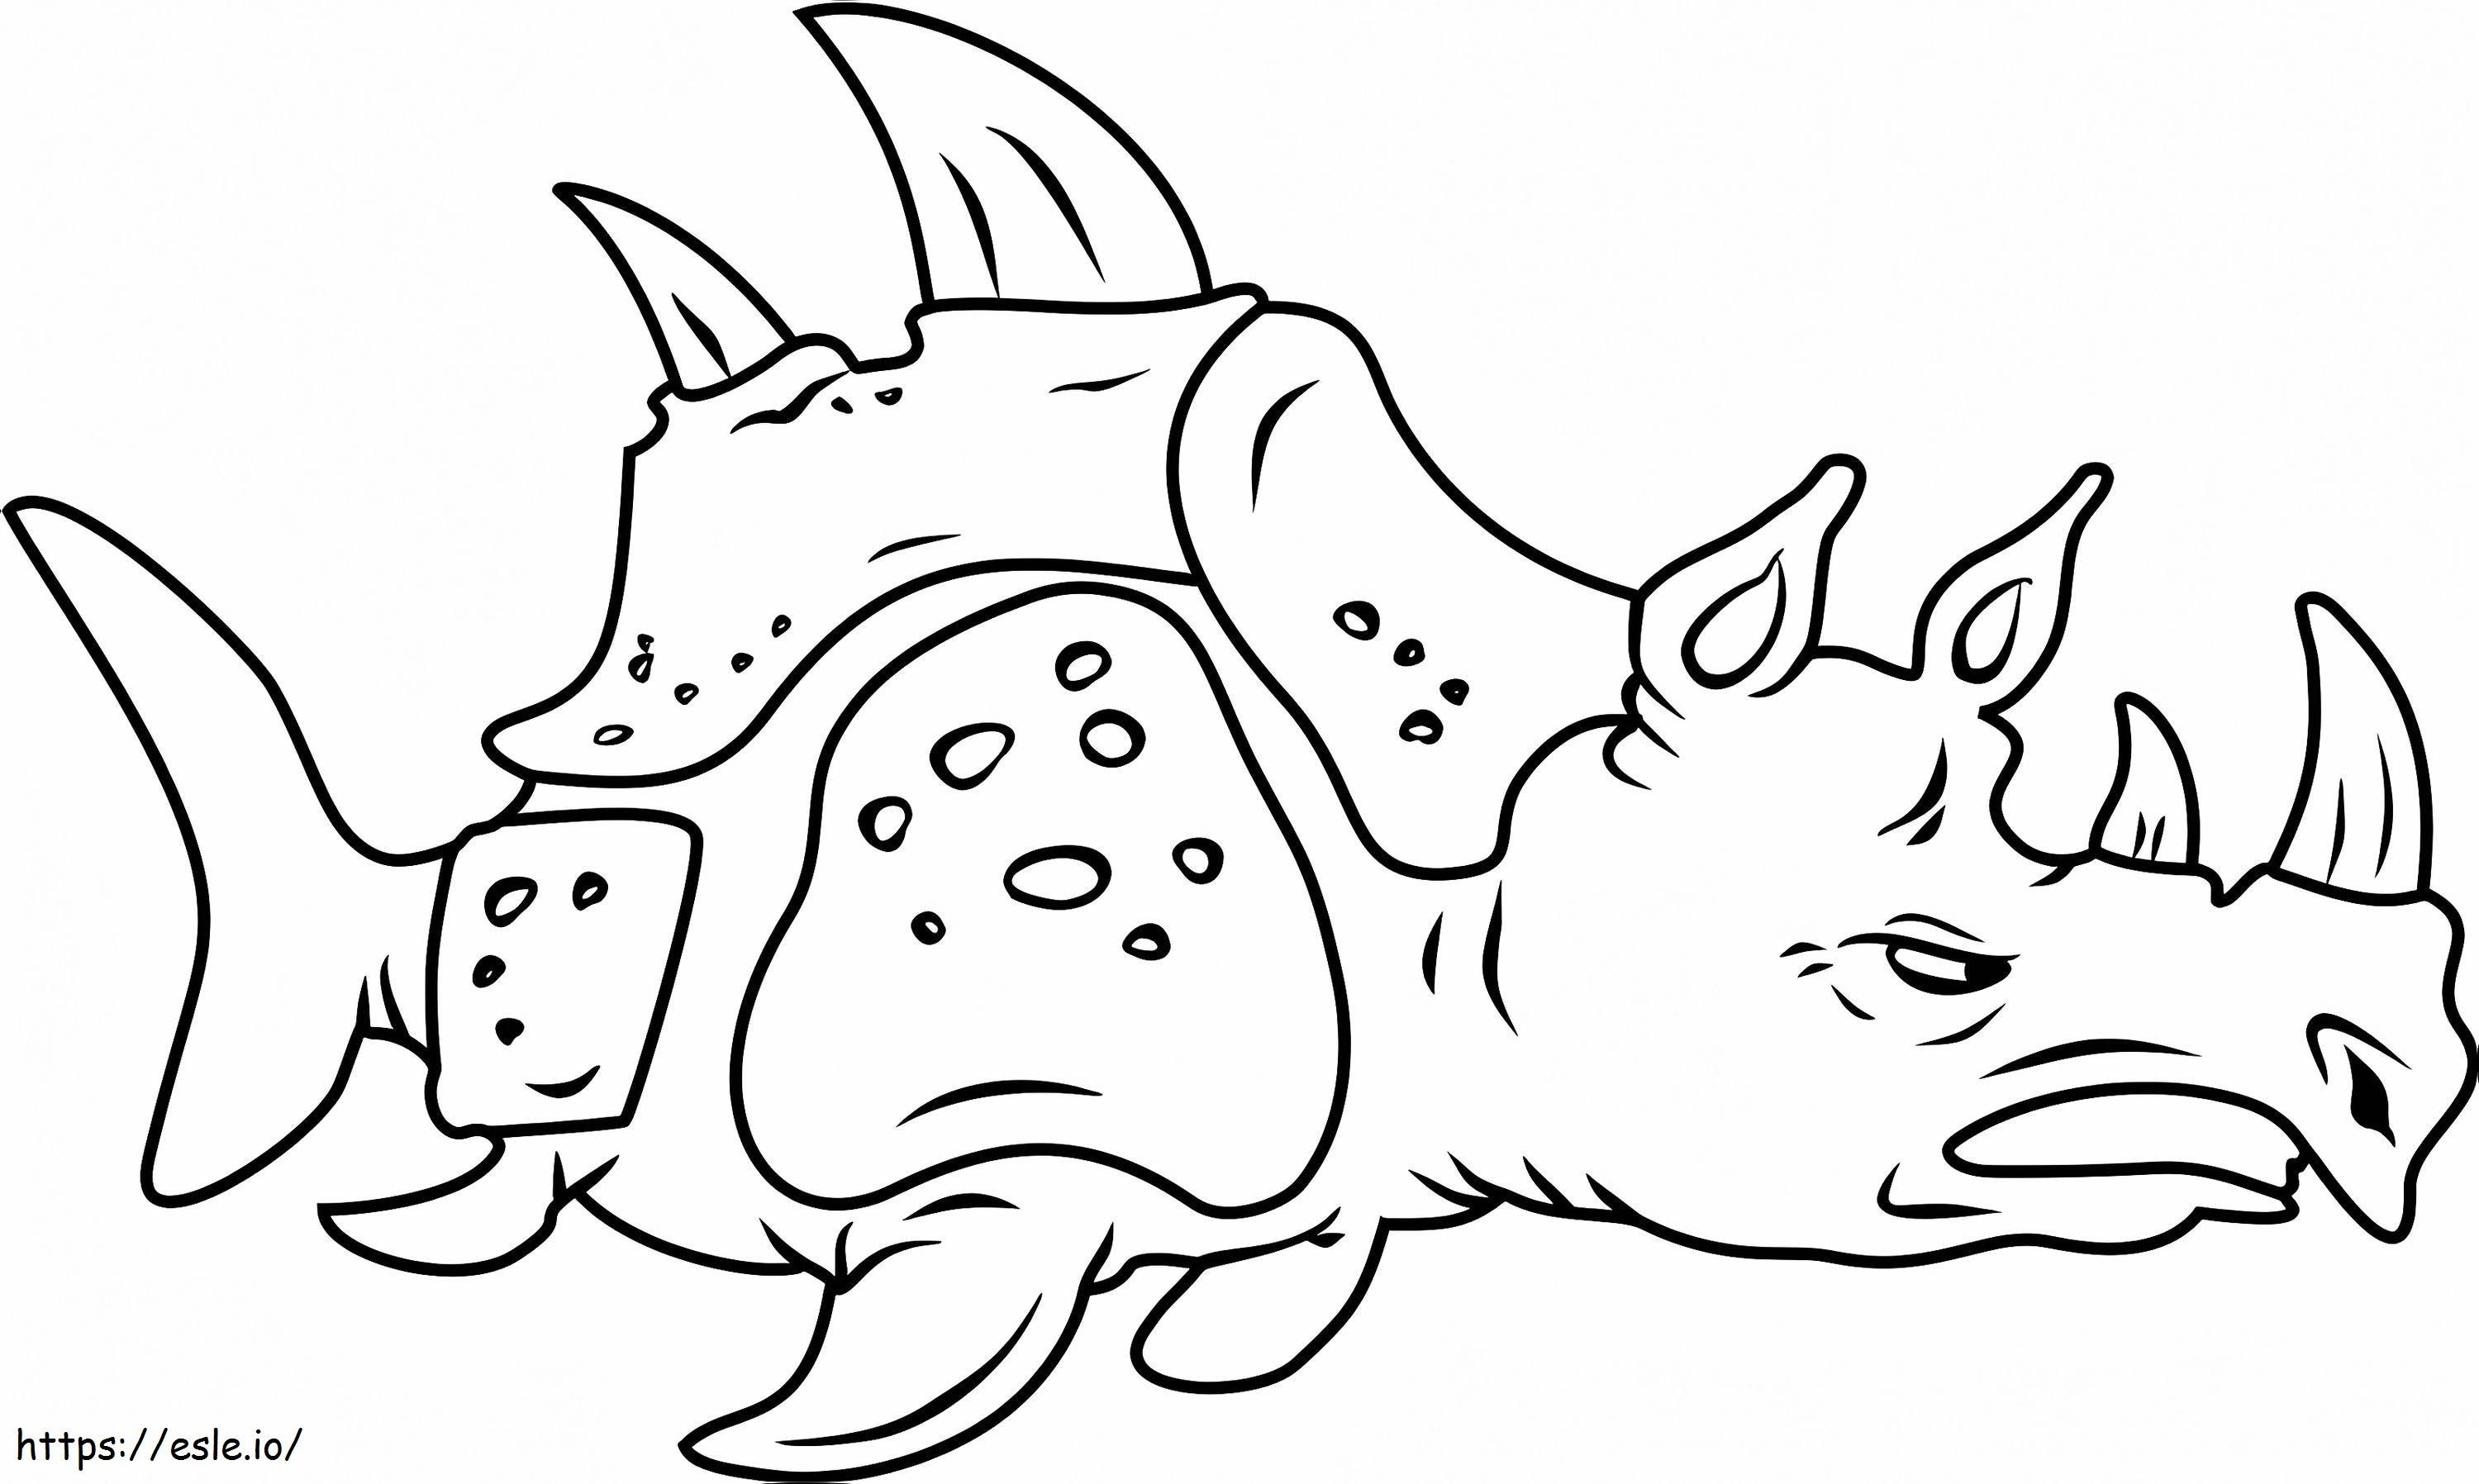 Sea Rhinoceros1 coloring page